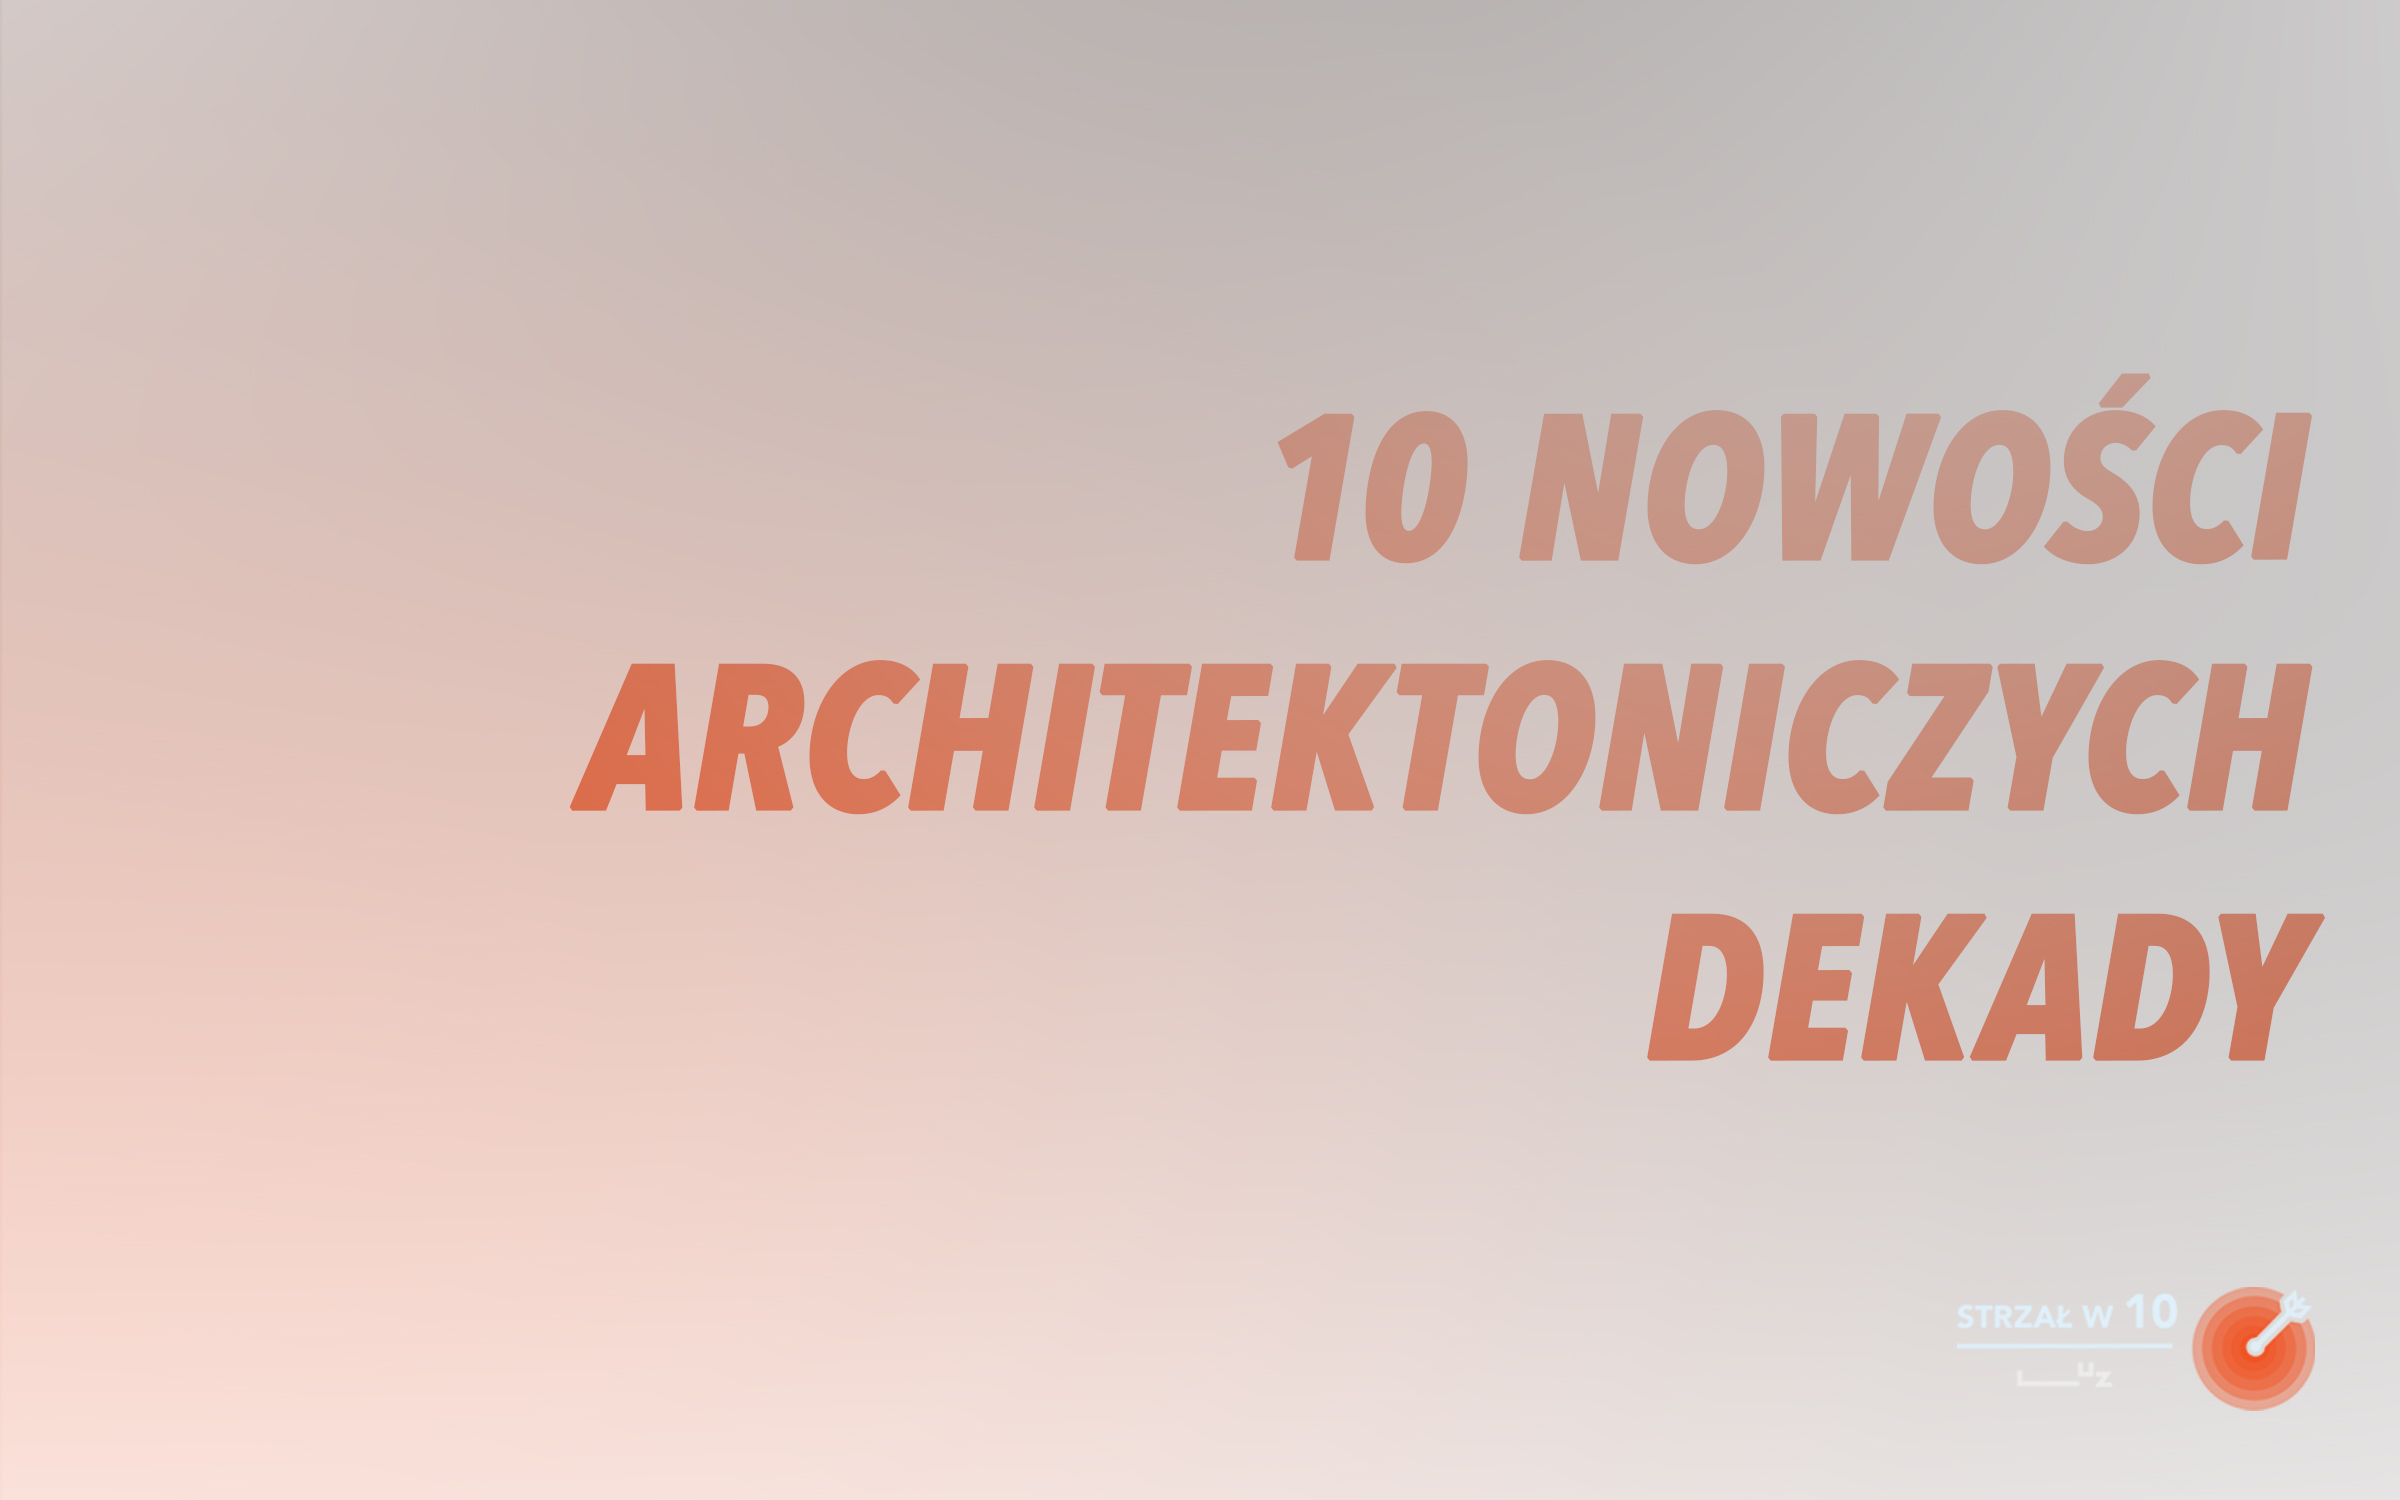 10 nowości architektonicznych Wrocławia – STRZAŁ w 10.